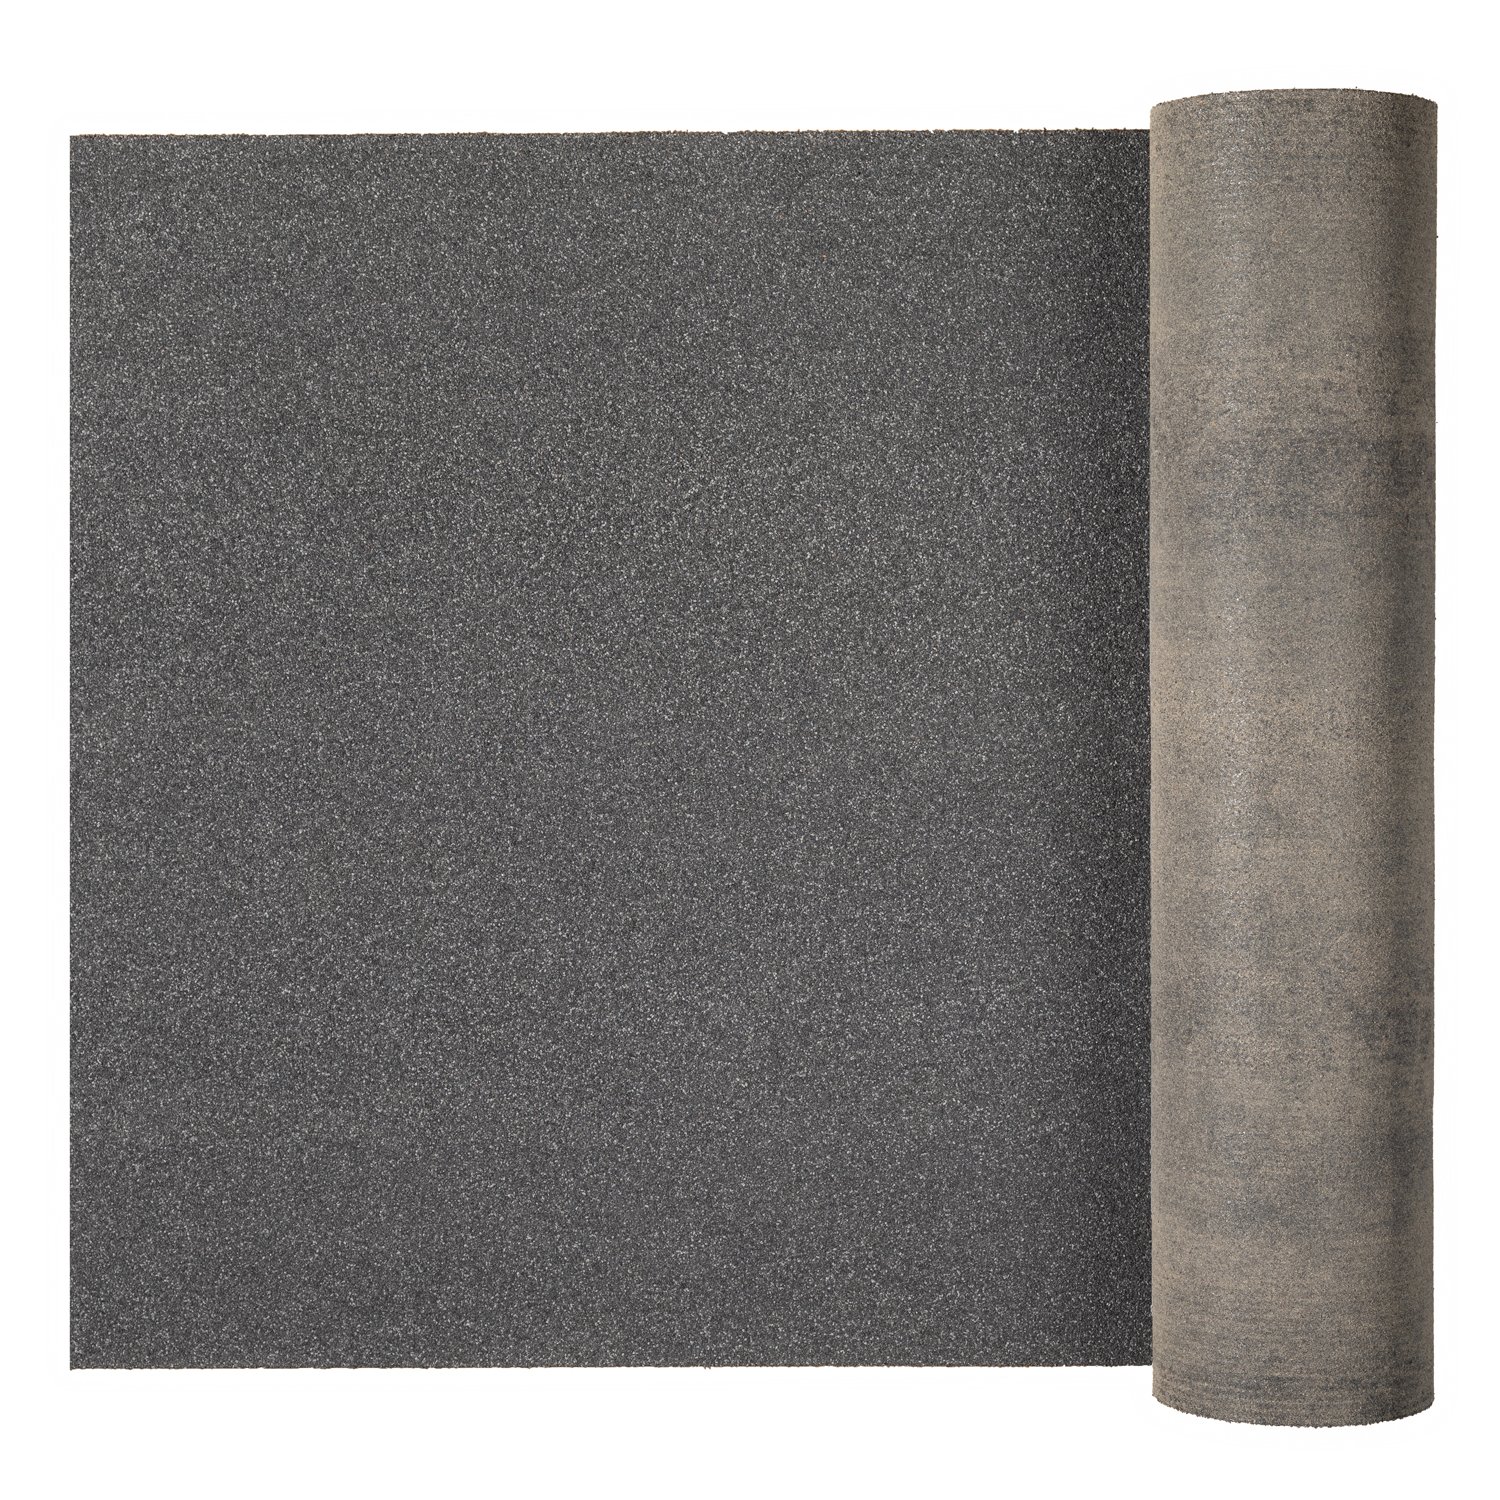 Ендовый ковер Quiet tile 1х10м, серый